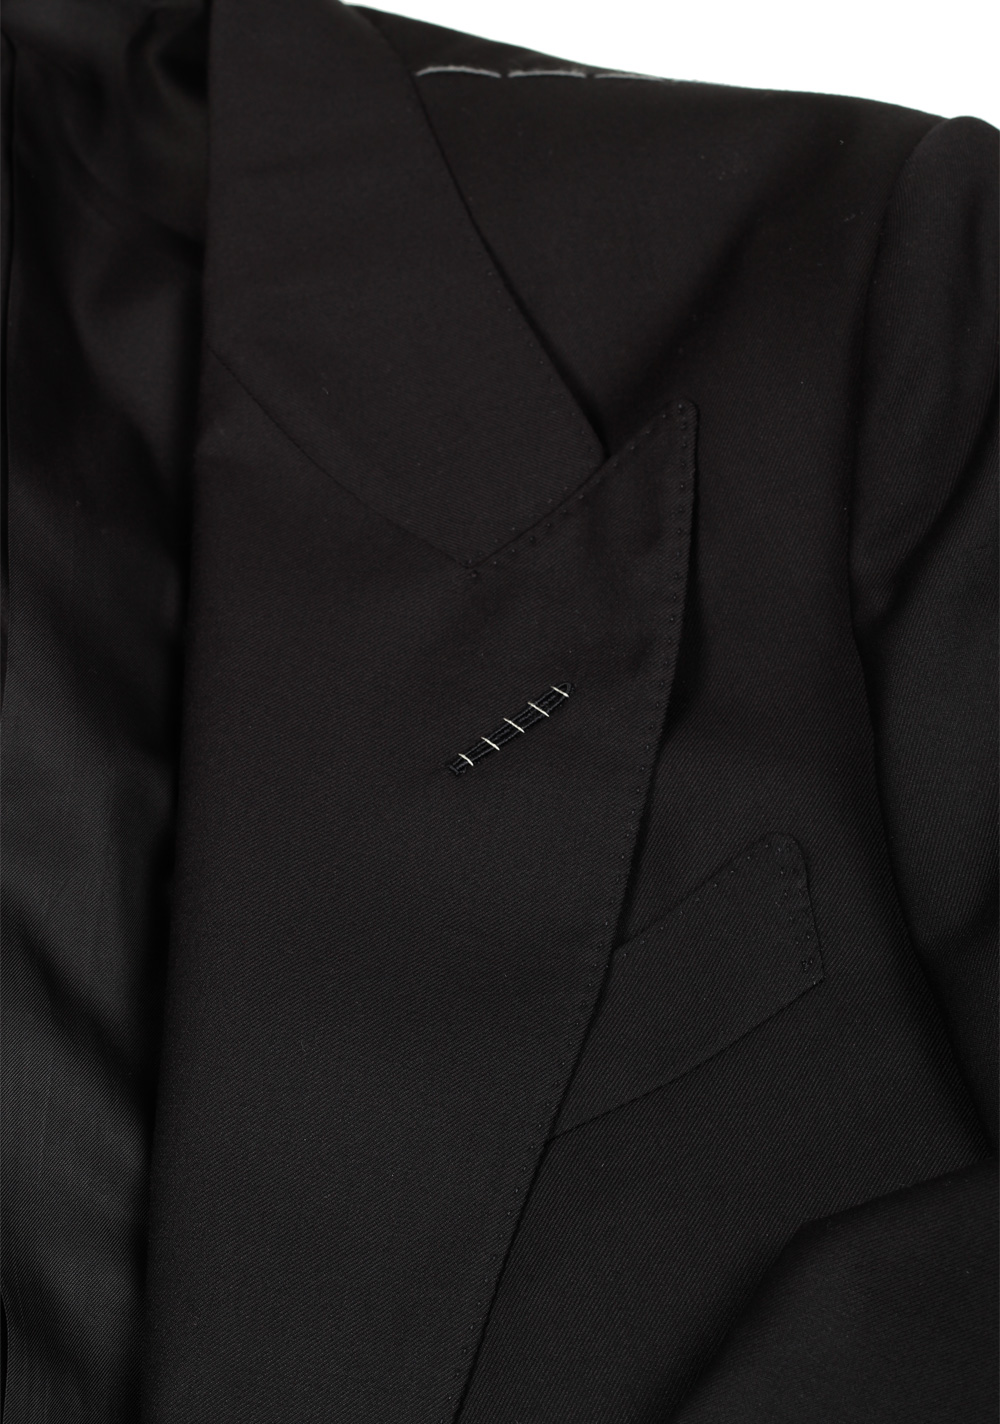 TOM FORD Shelton Black Suit Size 48 / 38R U.S. | Costume Limité